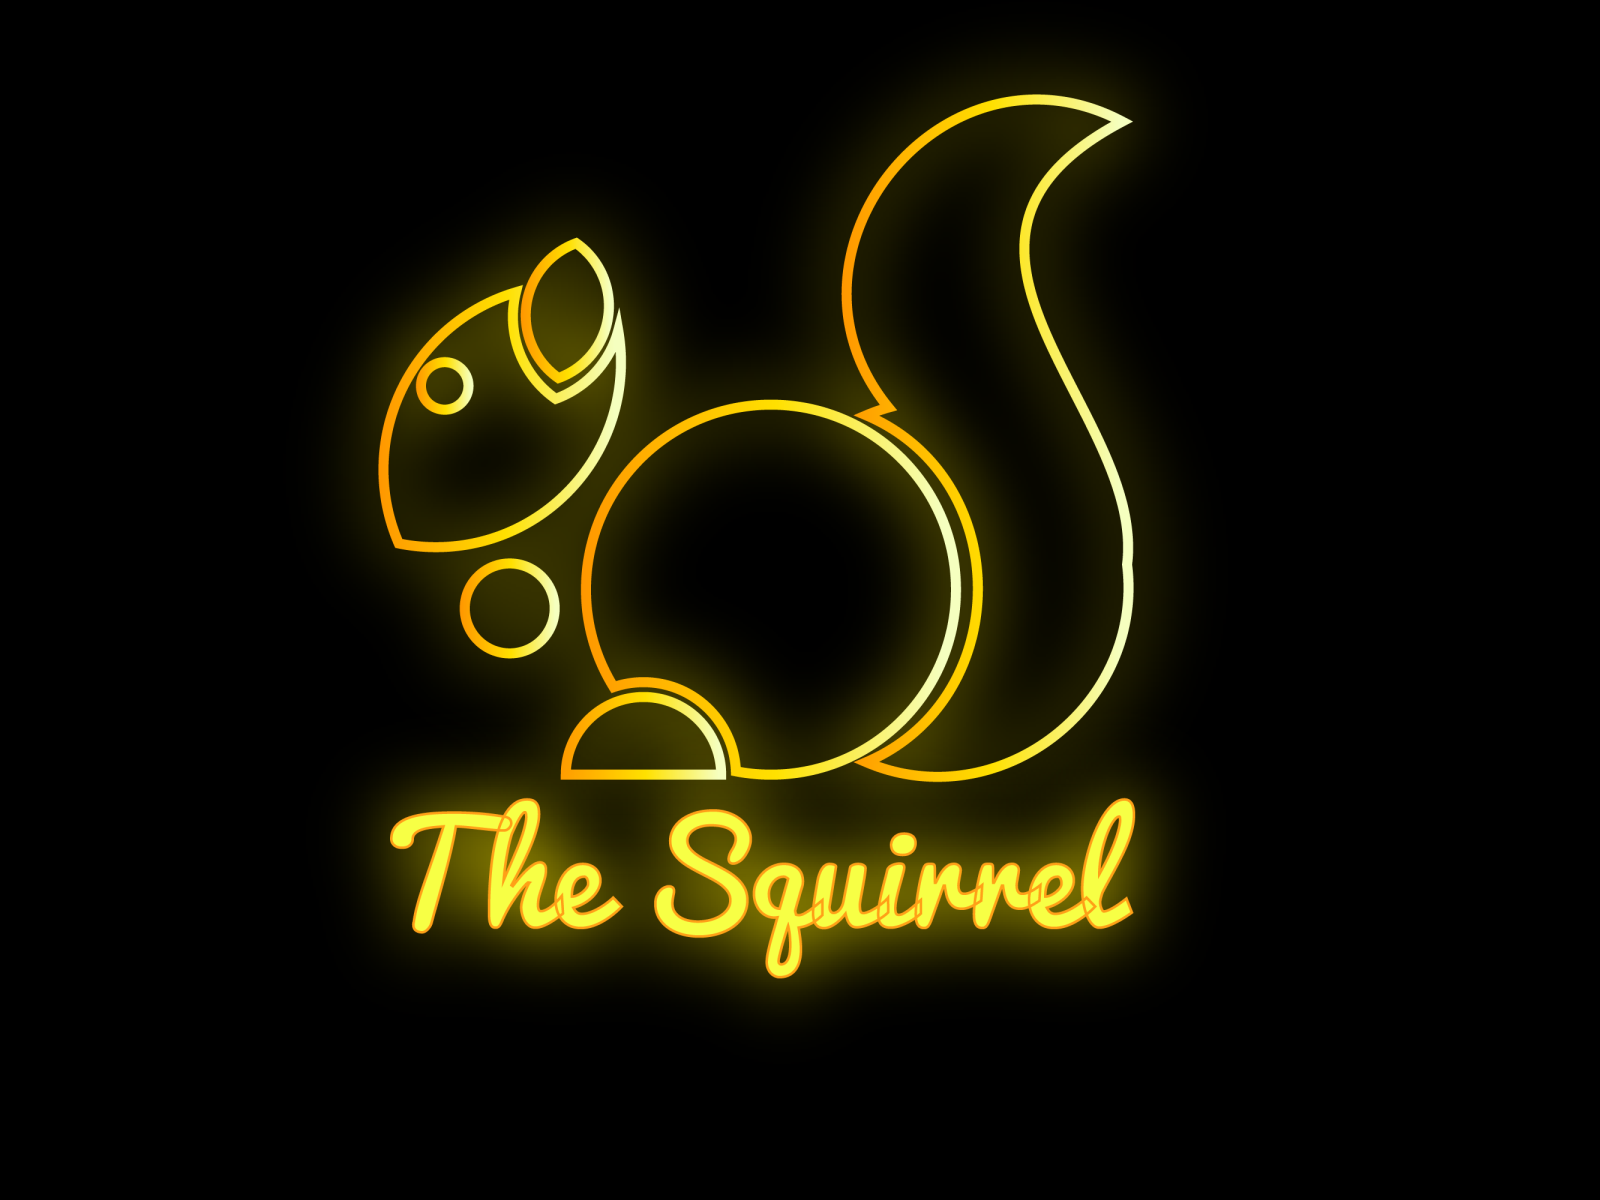 suirrel logo by Kasual Kraze Designs on Dribbble